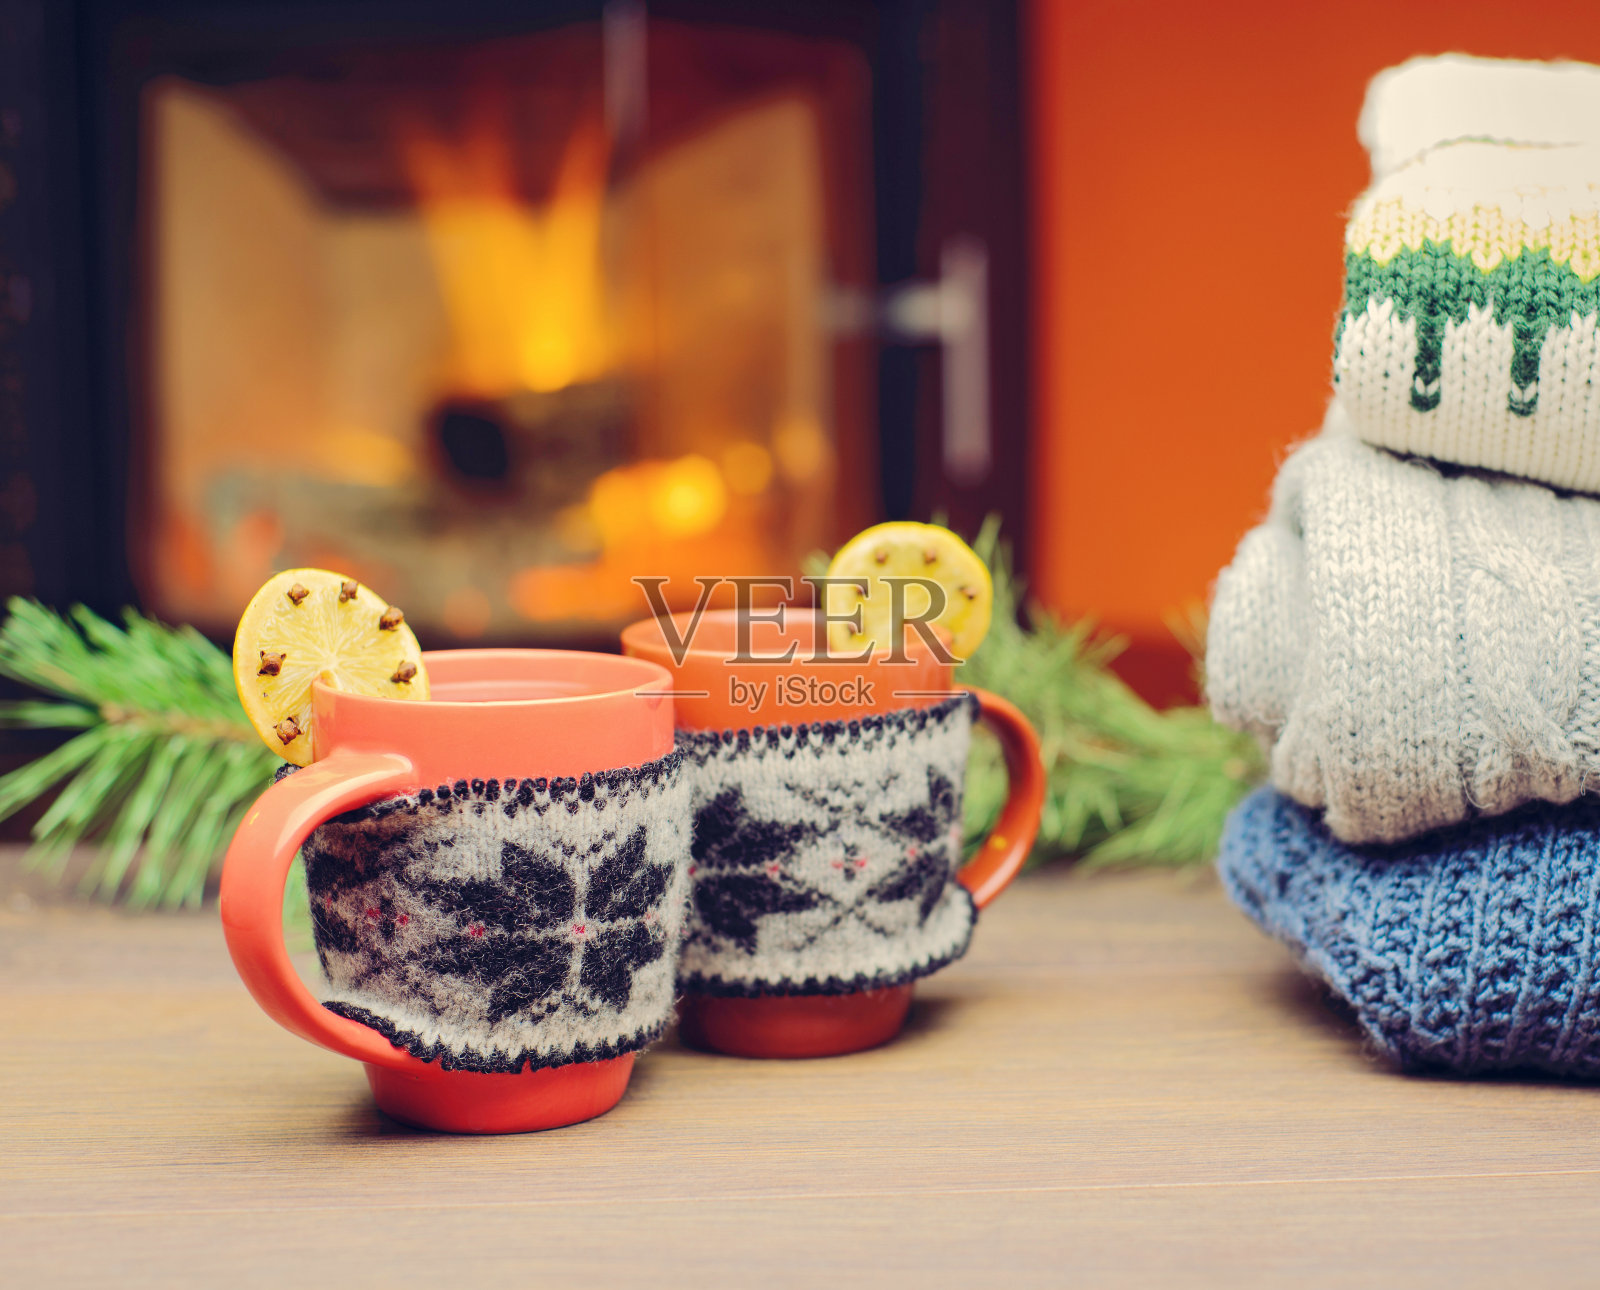 壁炉旁有圣诞装饰的杯子。戴着红色针织手套的马克杯站在炉边。在温暖的壁炉前喝一杯热饮。一堆舒适的针织毛衣。照片摄影图片